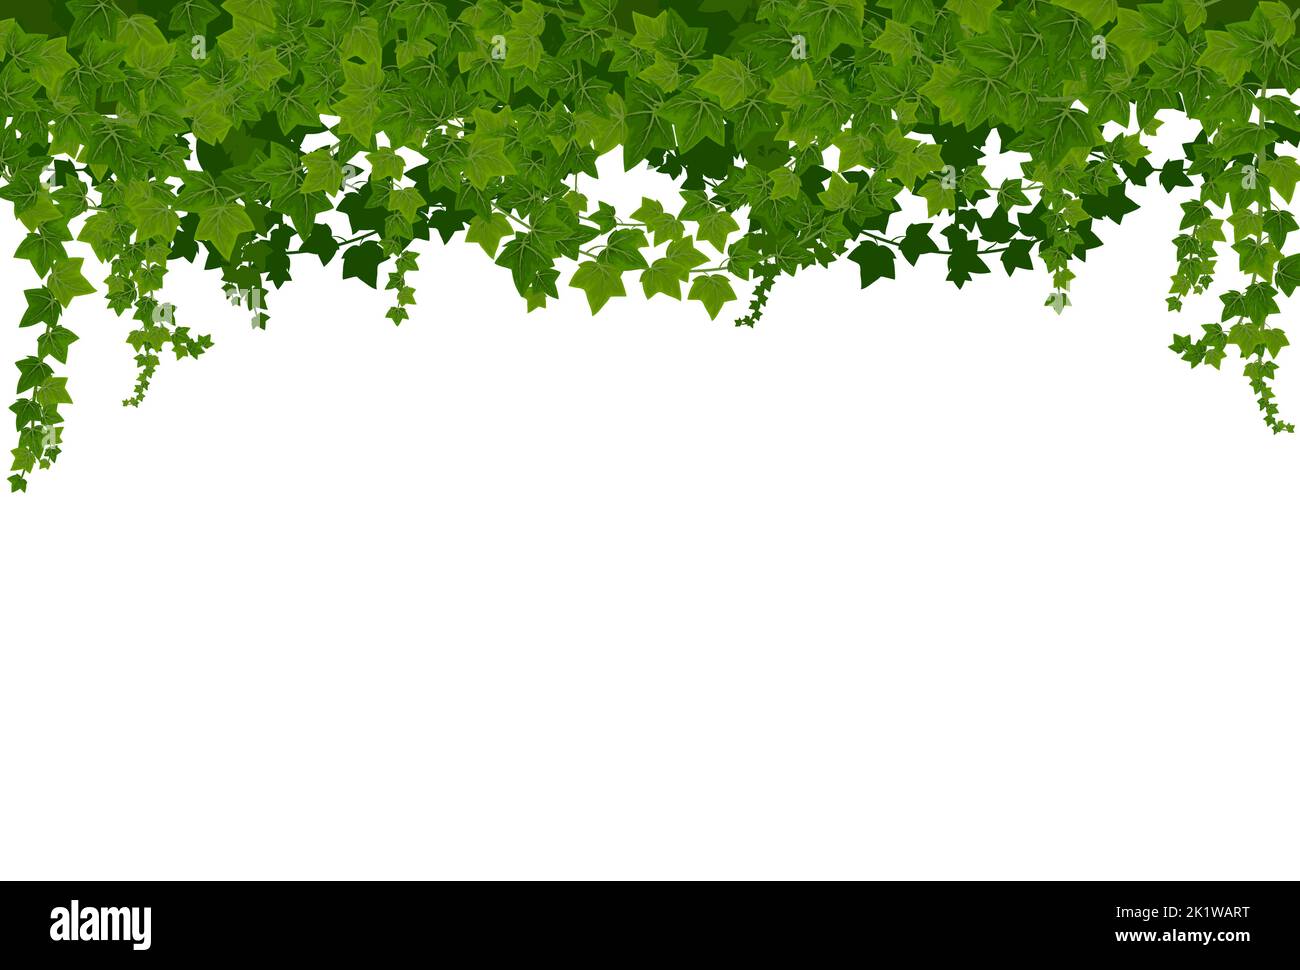 Fond Ivy lianas avec feuilles vertes. Cadre de vignes grimpantes vectorisées de dessins animés, feuilles vertes de plantes de super-réducteur, bordure décorative botanique. Branches Ivy ou hedera suspendues au-dessus, décoration de maison Illustration de Vecteur